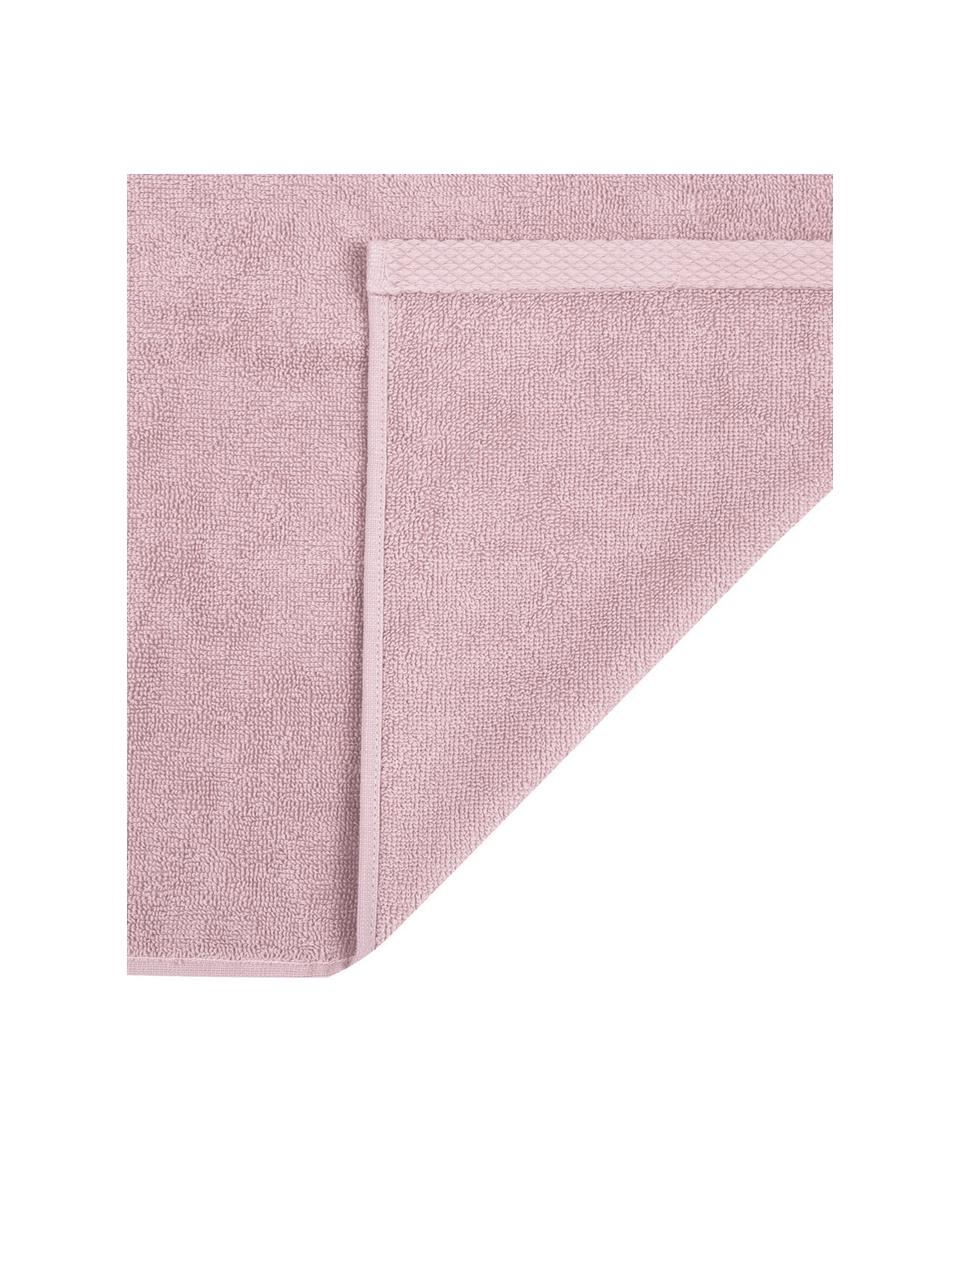 Eenkleurige handdoek Comfort, verschillende formaten, Oudroze, Handdoek, B 50 x L 100 cm, 2 stuks